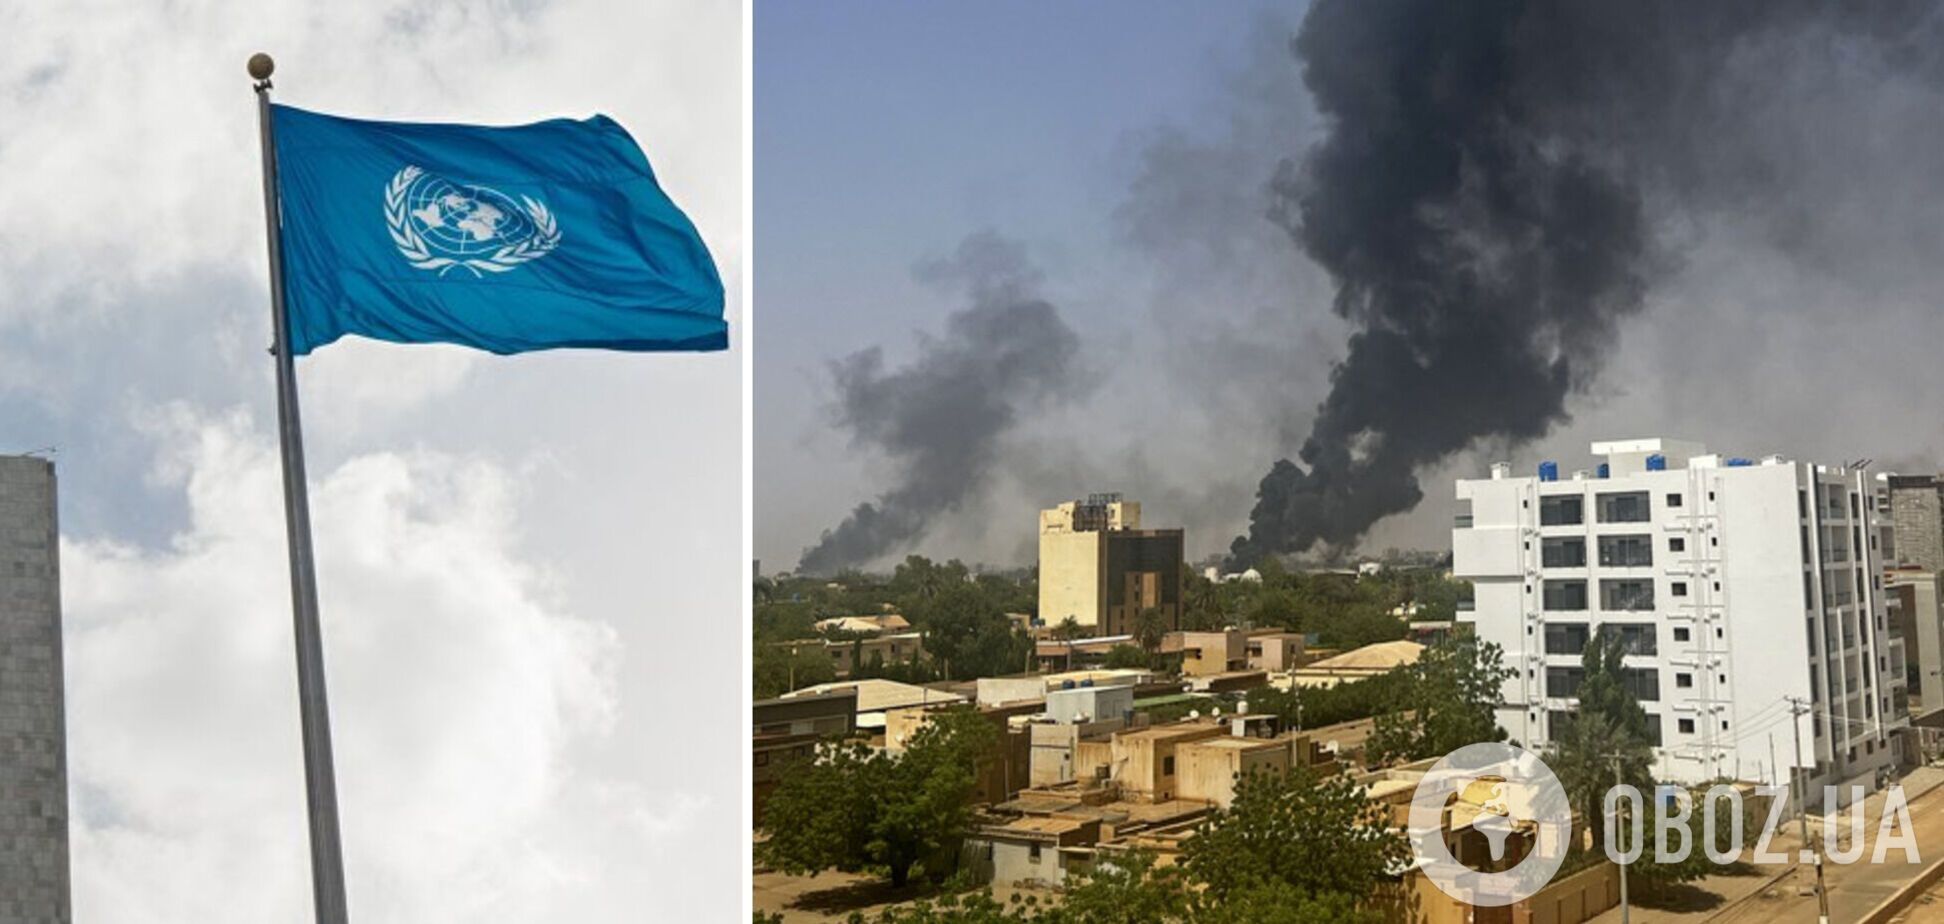 Во время столкновений в Судане погибли три сотрудника ООН, есть пострадавшие